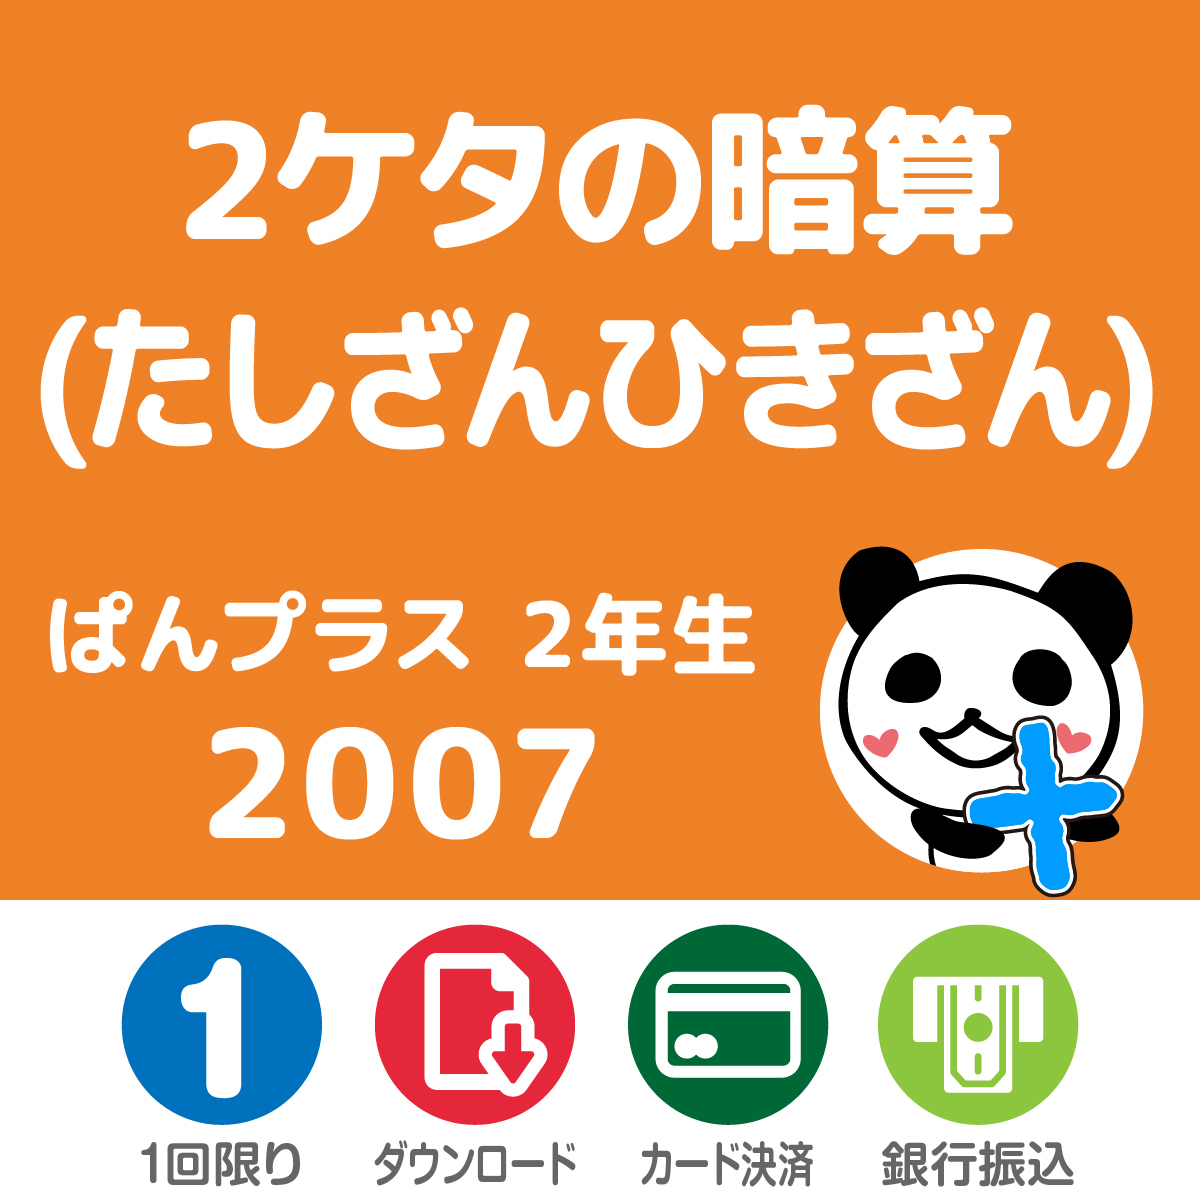 ぱんプラス算数　2007　2ケタの暗算(たしざんひきざん)